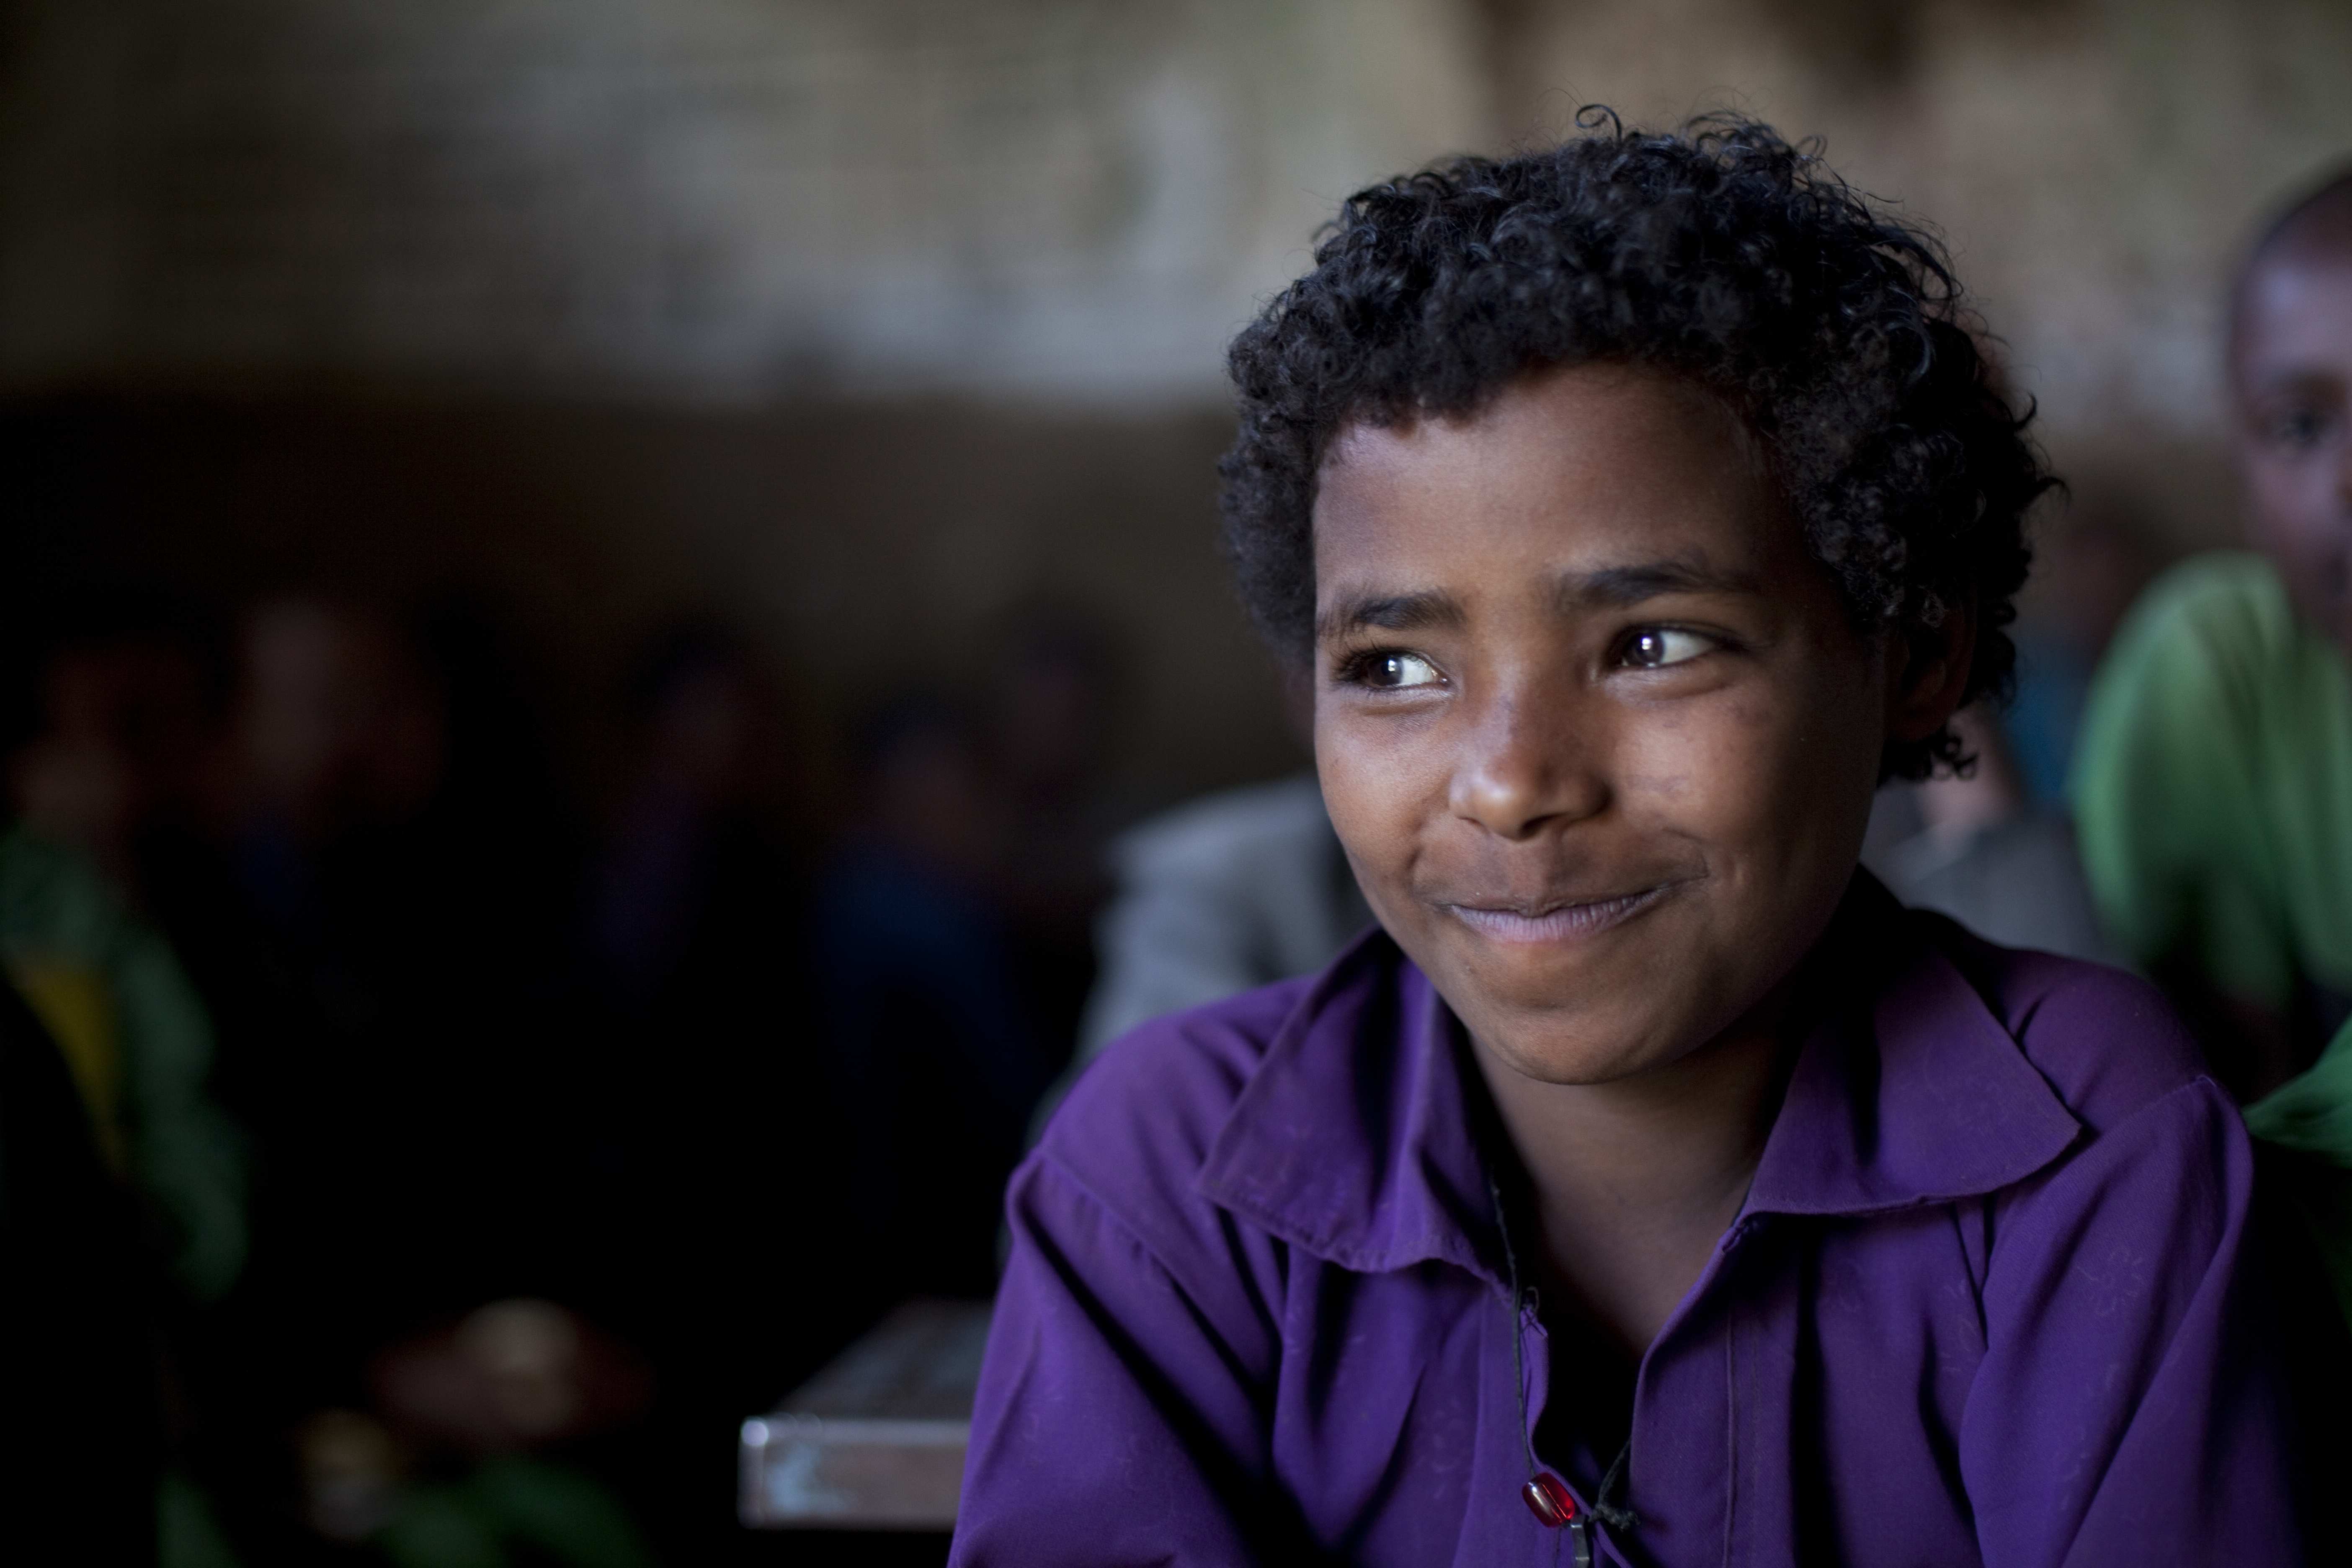 Lächelnder Junge aus Äthiopien - Humanitäre Hilfe für Dürreopfer in Äthiopien, Junge in lila Oberteil, schmunzelt, lächelt, Locken, sitzt, schaut zur Seite, Schule